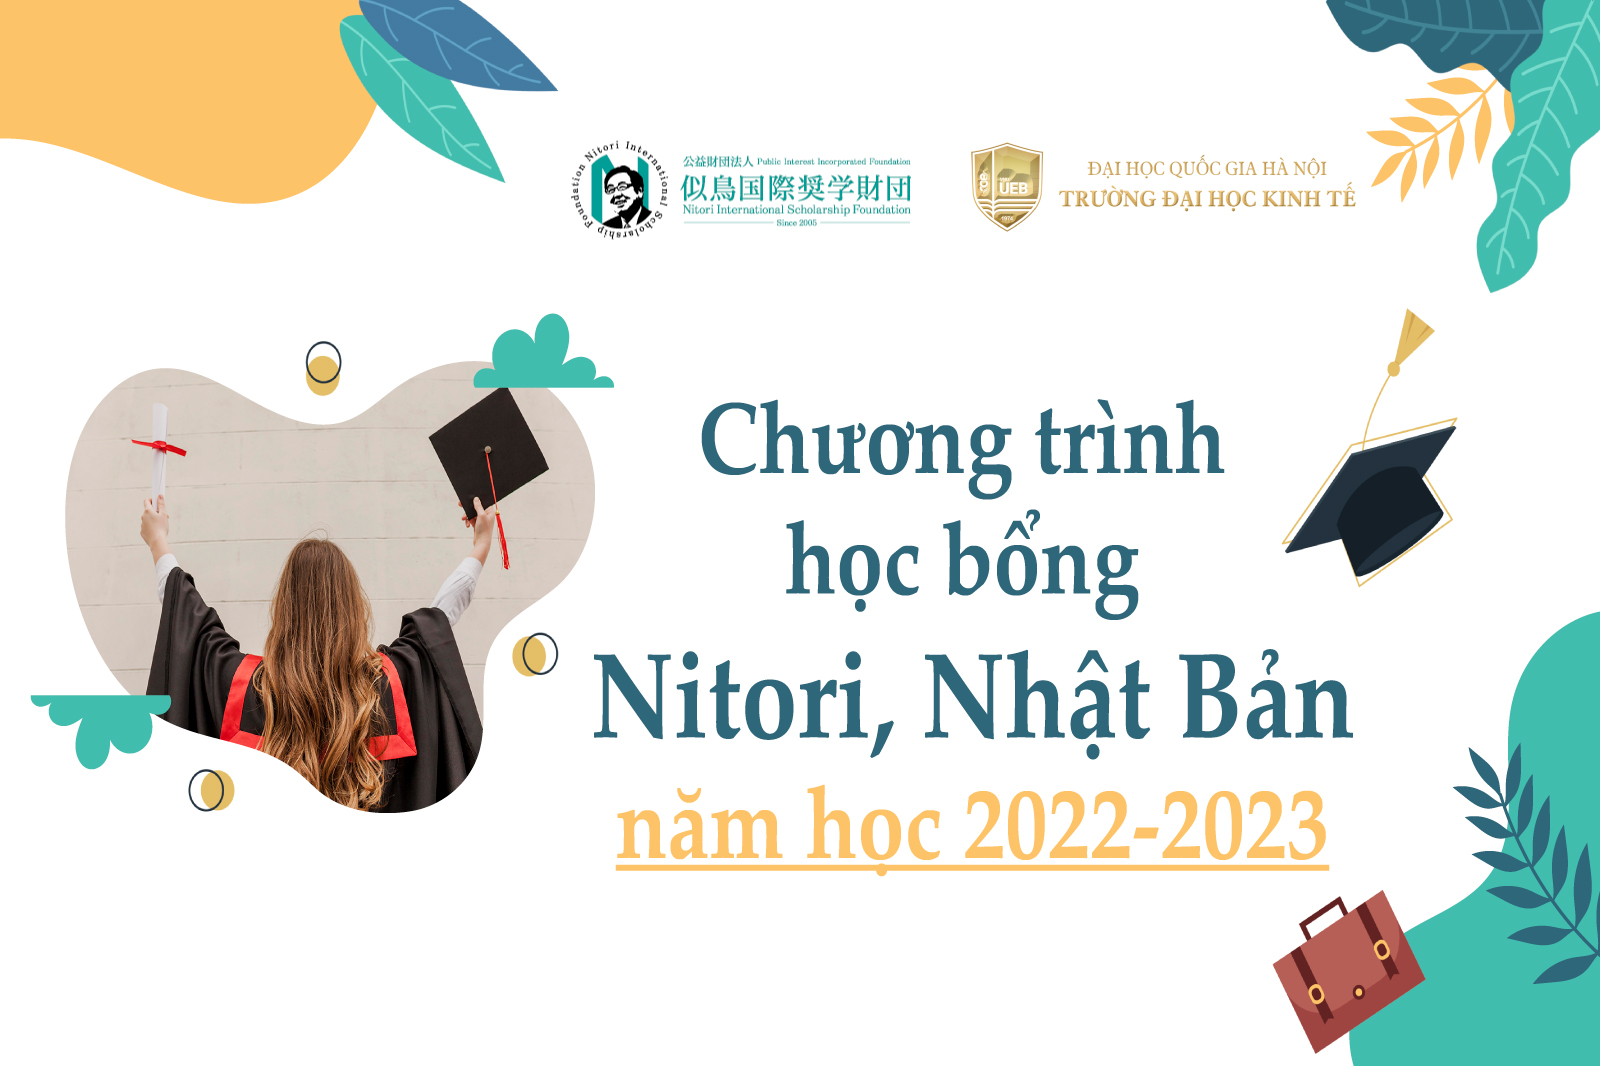 Chương trình học bổng Nitori, Nhật Bản năm học 2022-2023